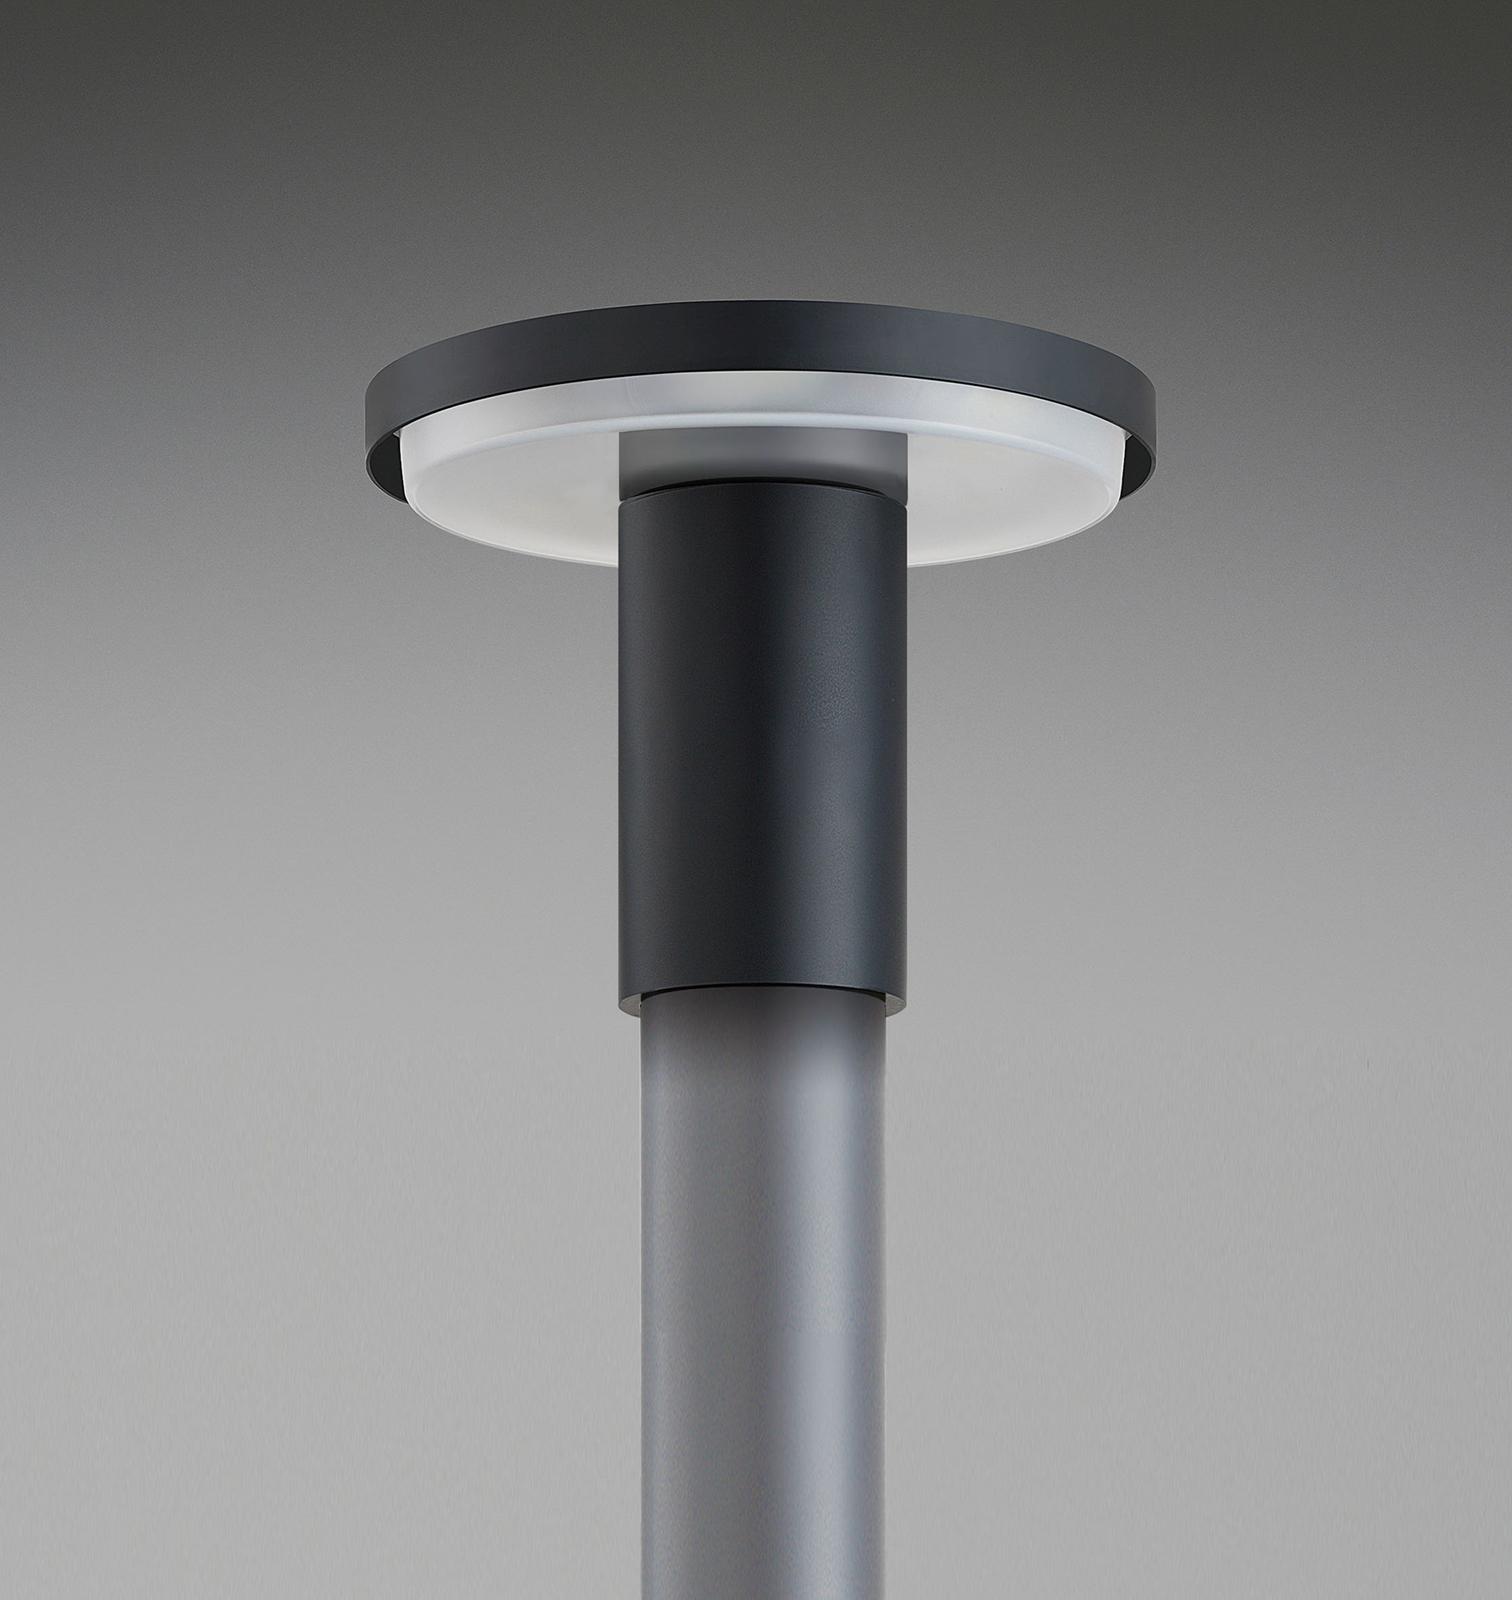 水銀ランプ（※2）の生産を終了、LED照明器具へのリニューアル提案を 